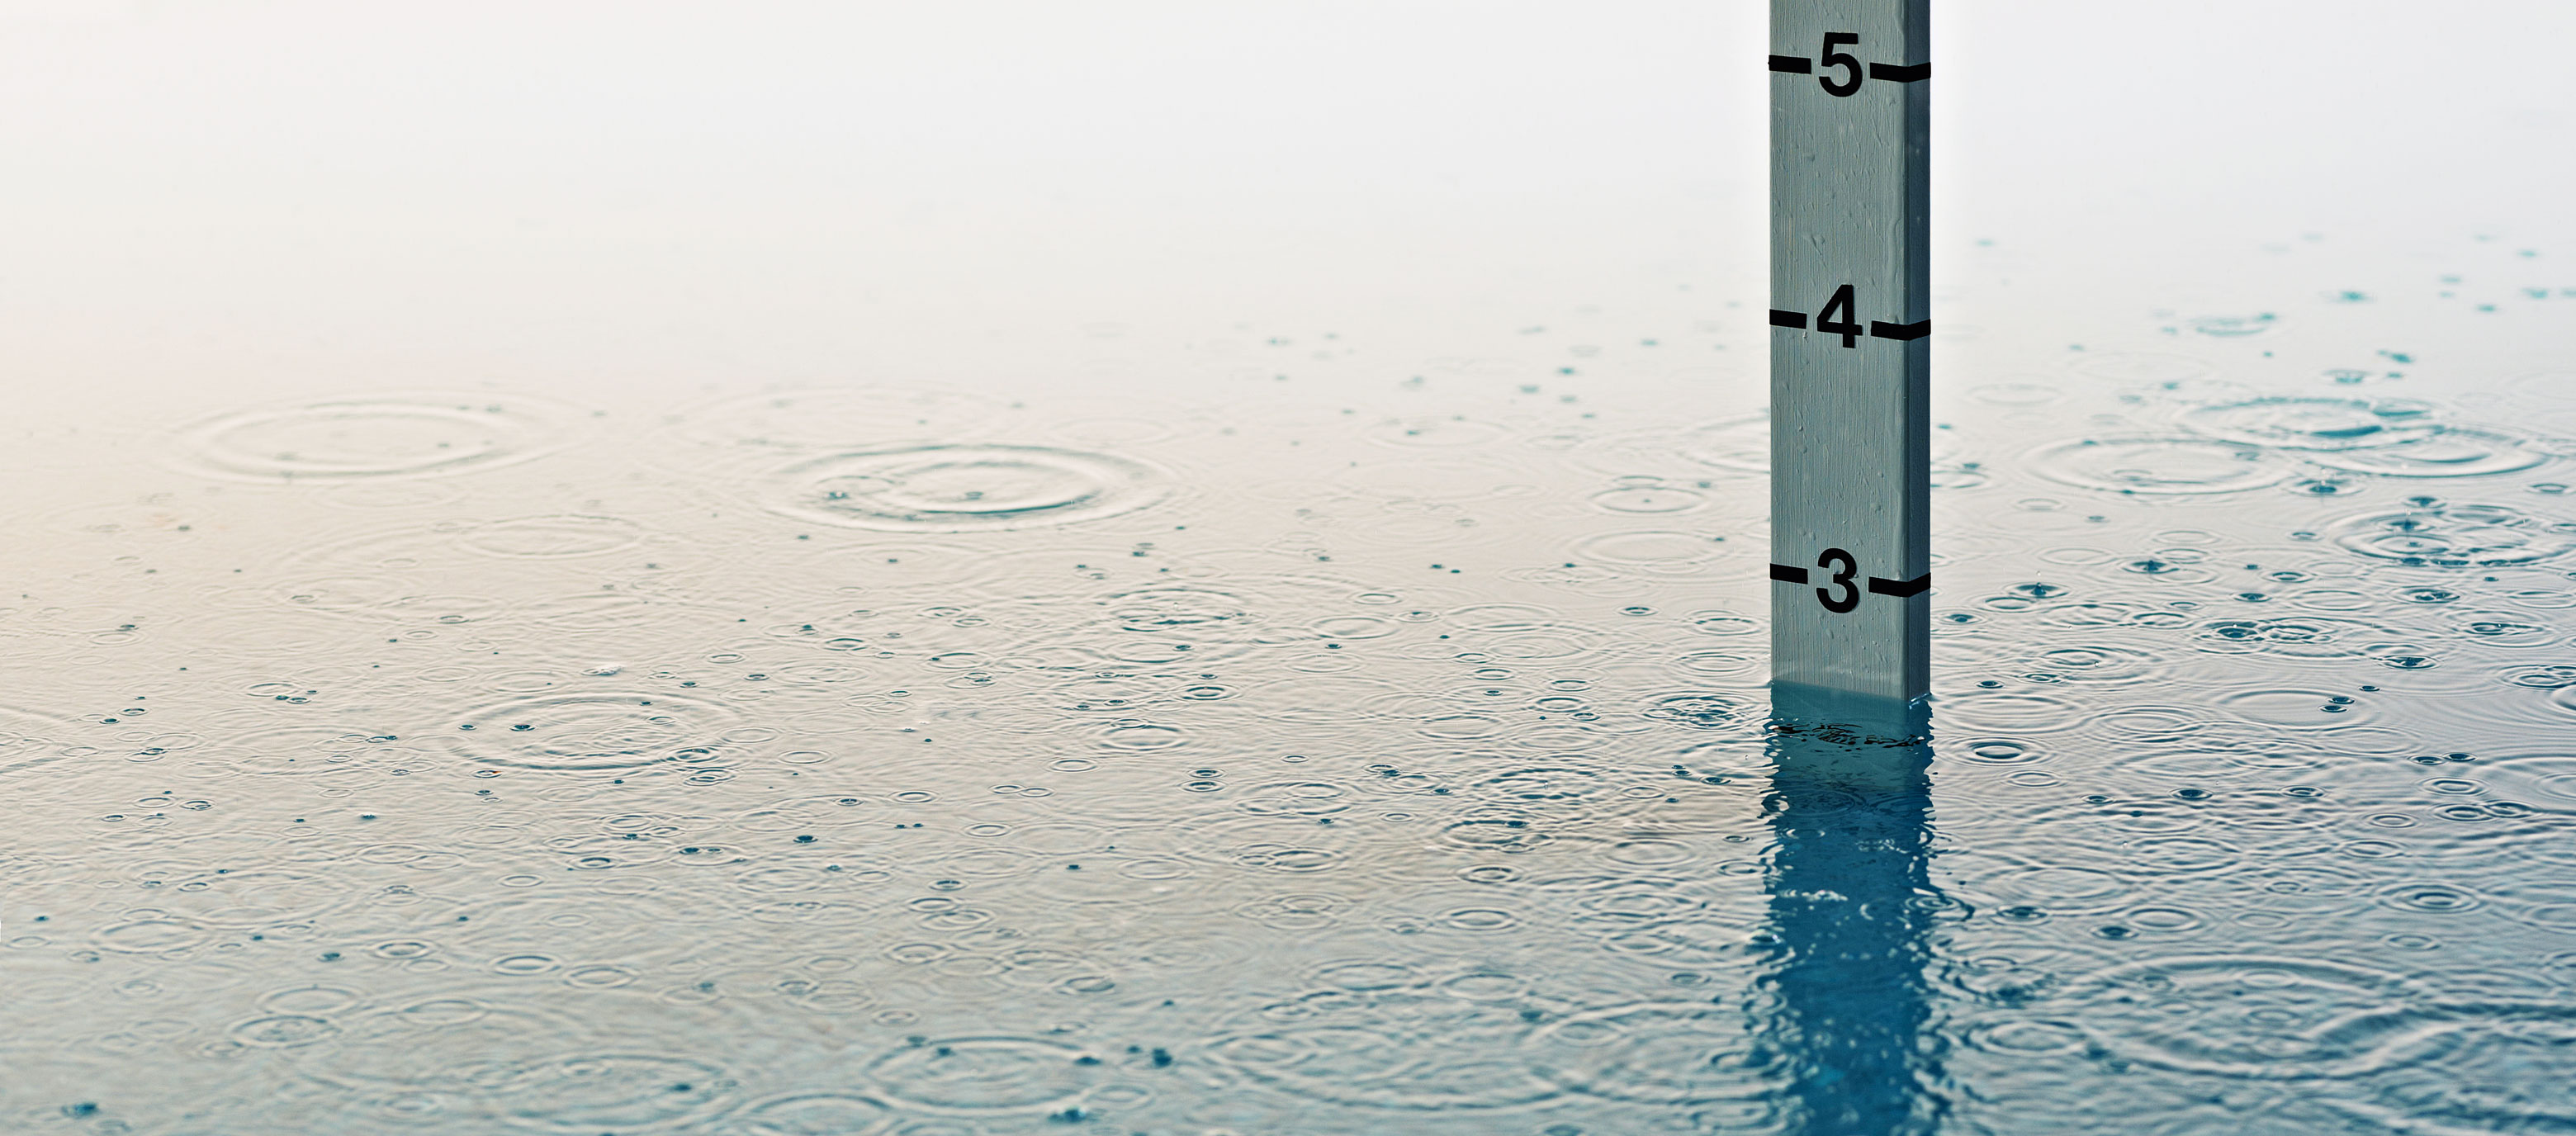 Ein Messtab steht im Wasser, das mit Regentropfen übersät ist und leichte Wellen bildet. Die Wasserhöhe liegt etwas unter der Ziffer 3.